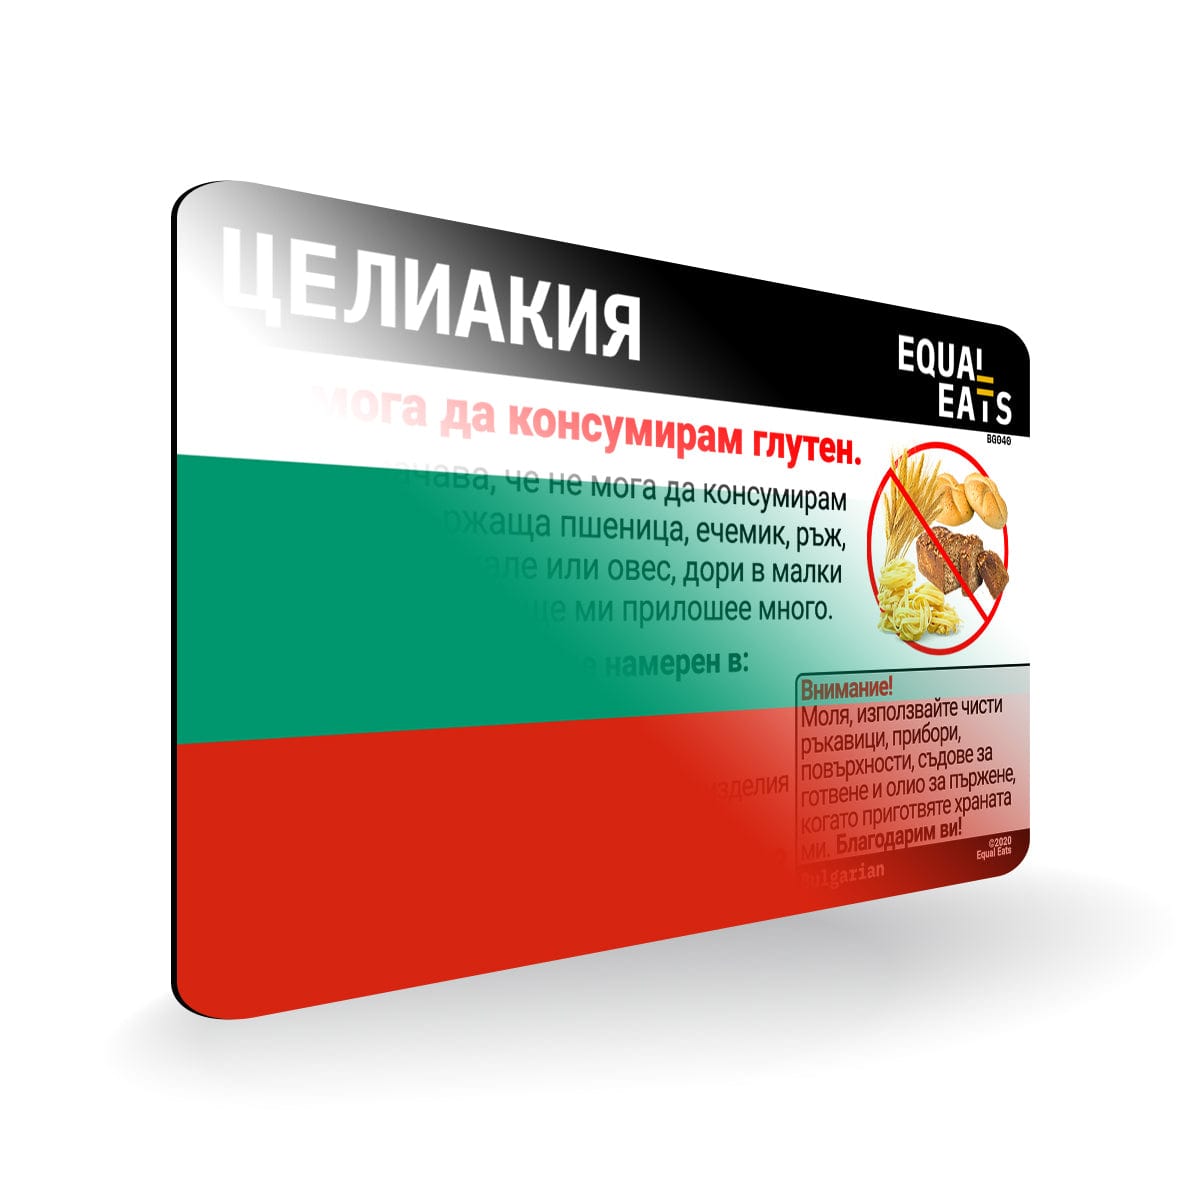 Bulgaria Celiac Disease Card - Gluten Free Travel in SpainSpanish Celiac Disease Card - Gluten Free Travel in Bulgaria